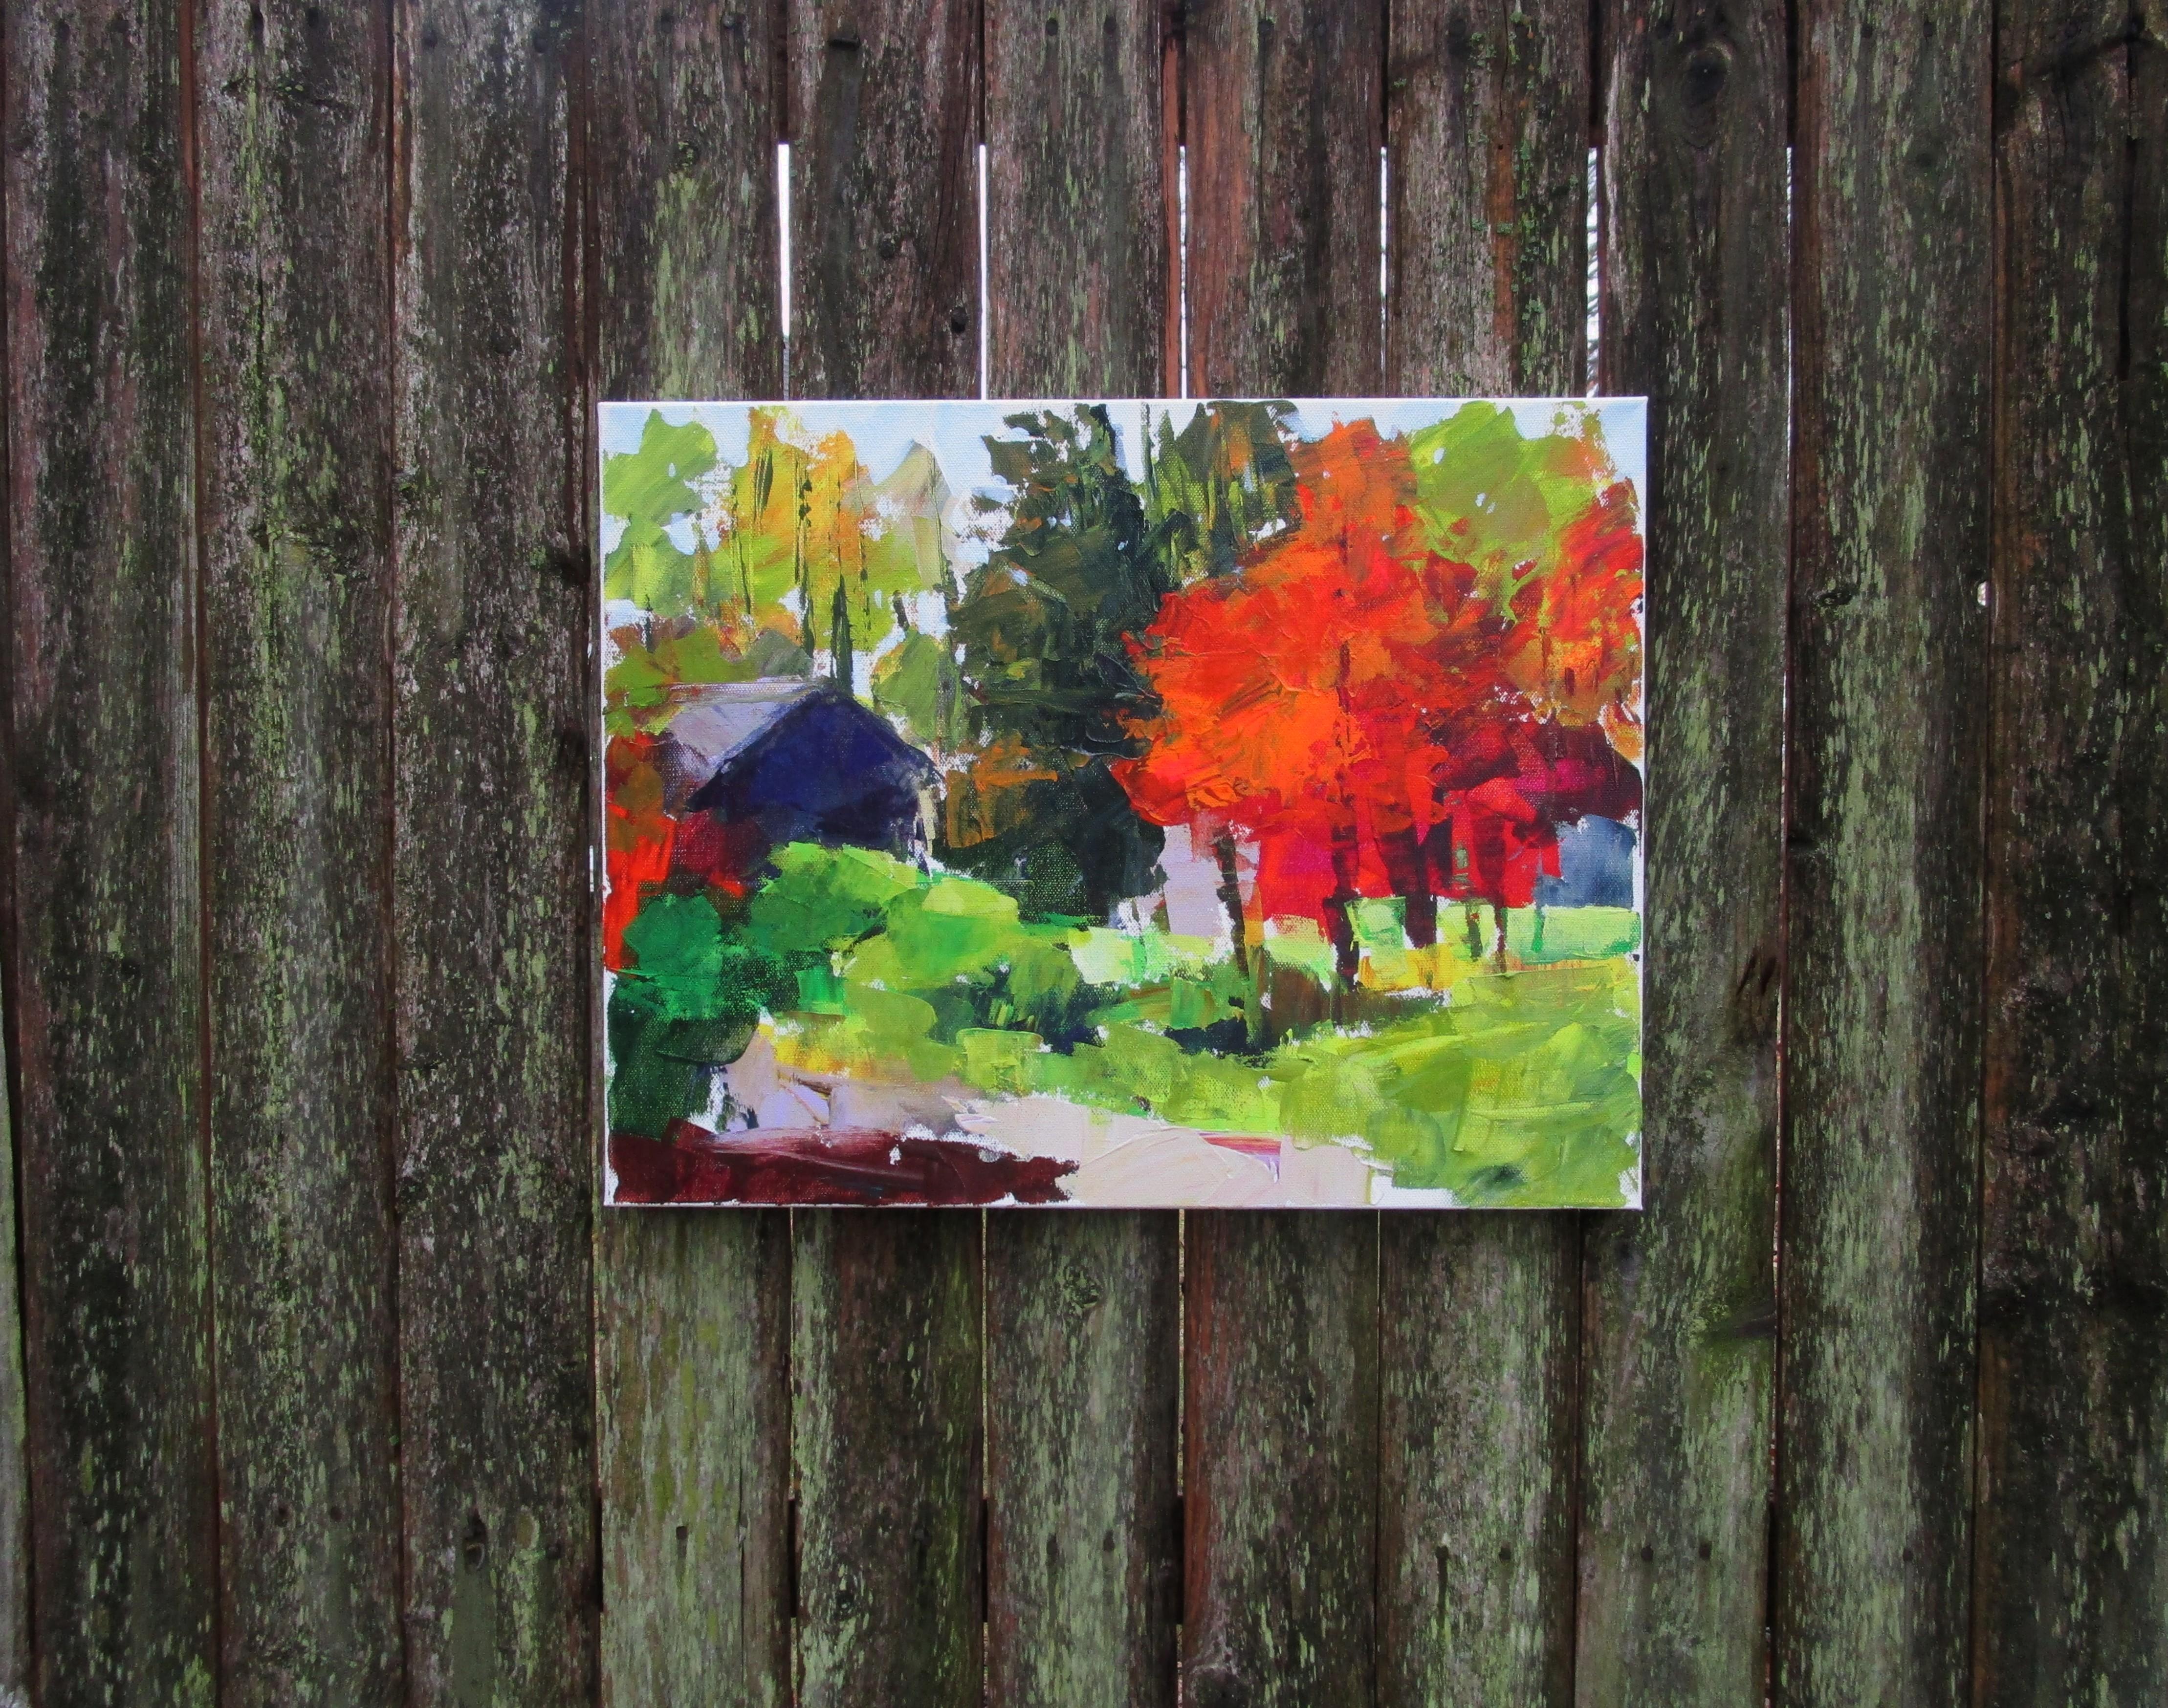 <p>Kommentare der Künstlerin<br>Die Künstlerin Janet Dyer malt ein Haus, das in ein Dickicht von Bäumen eingebettet ist. Sie malt im Stil des Expressionismus mit kräftigen, energischen Strichen. Die herbstliche Szene leuchtet in warmen Rot- und